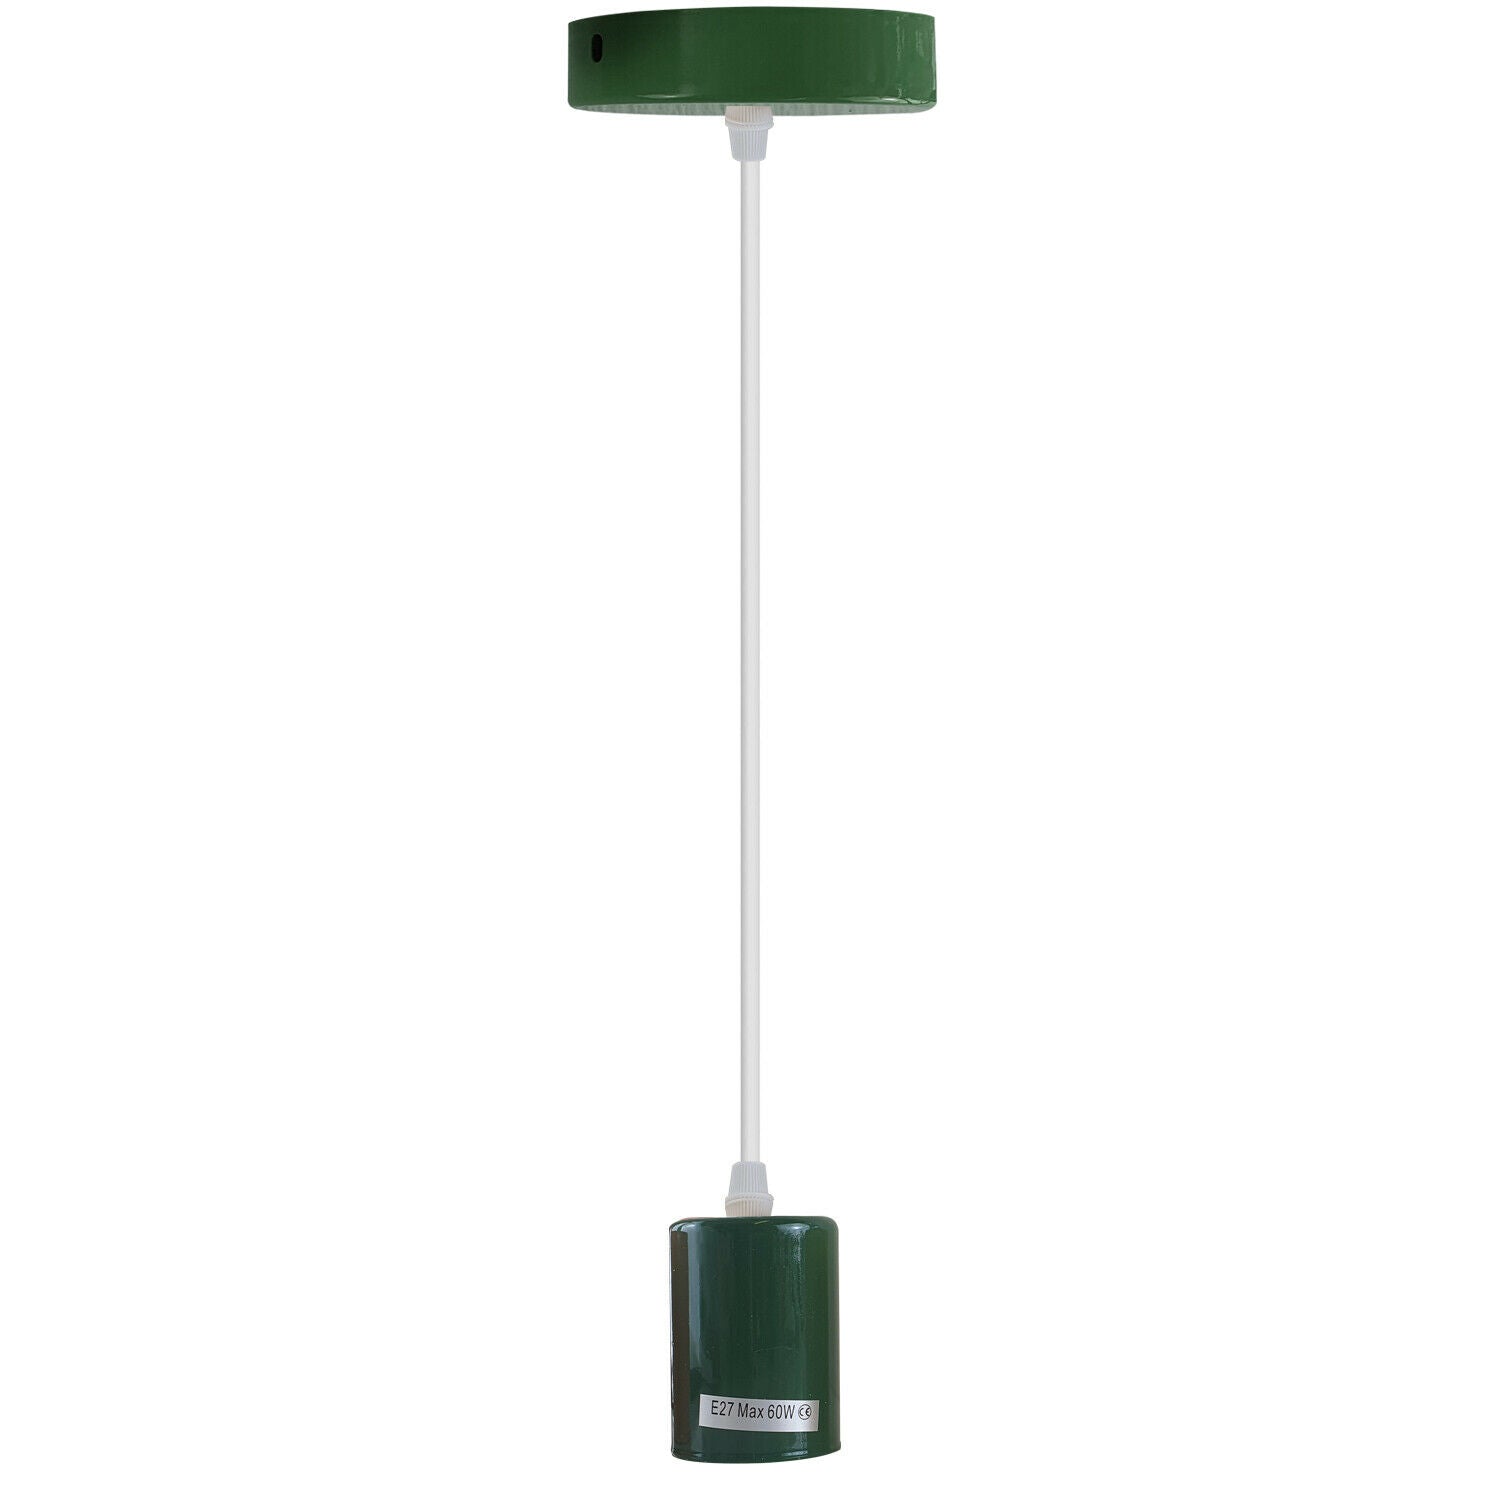 Green E27 Ceiling Light Fitting Industrial Pendant Lamp Bulb Holder~1675 - LEDSone UK Ltd